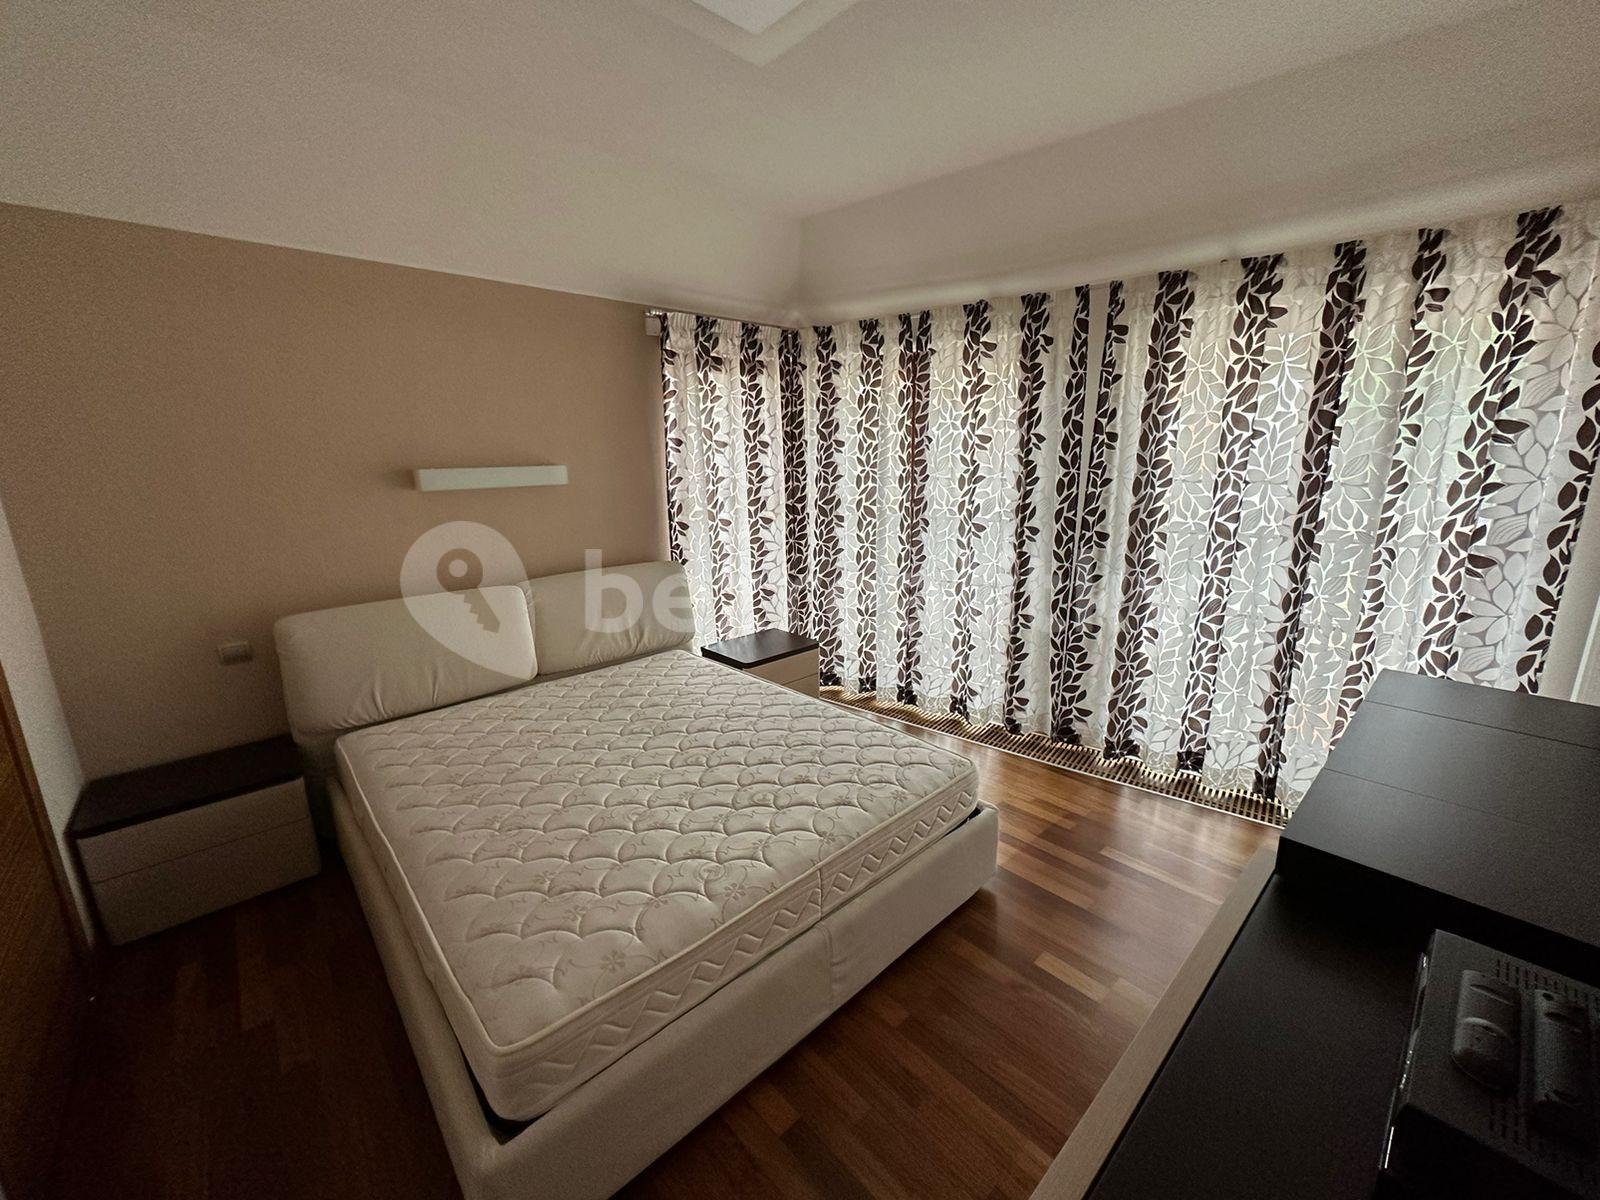 2 bedroom with open-plan kitchen flat for sale, 83 m², Zámecký vrch, Karlovy Vary, Karlovarský Region